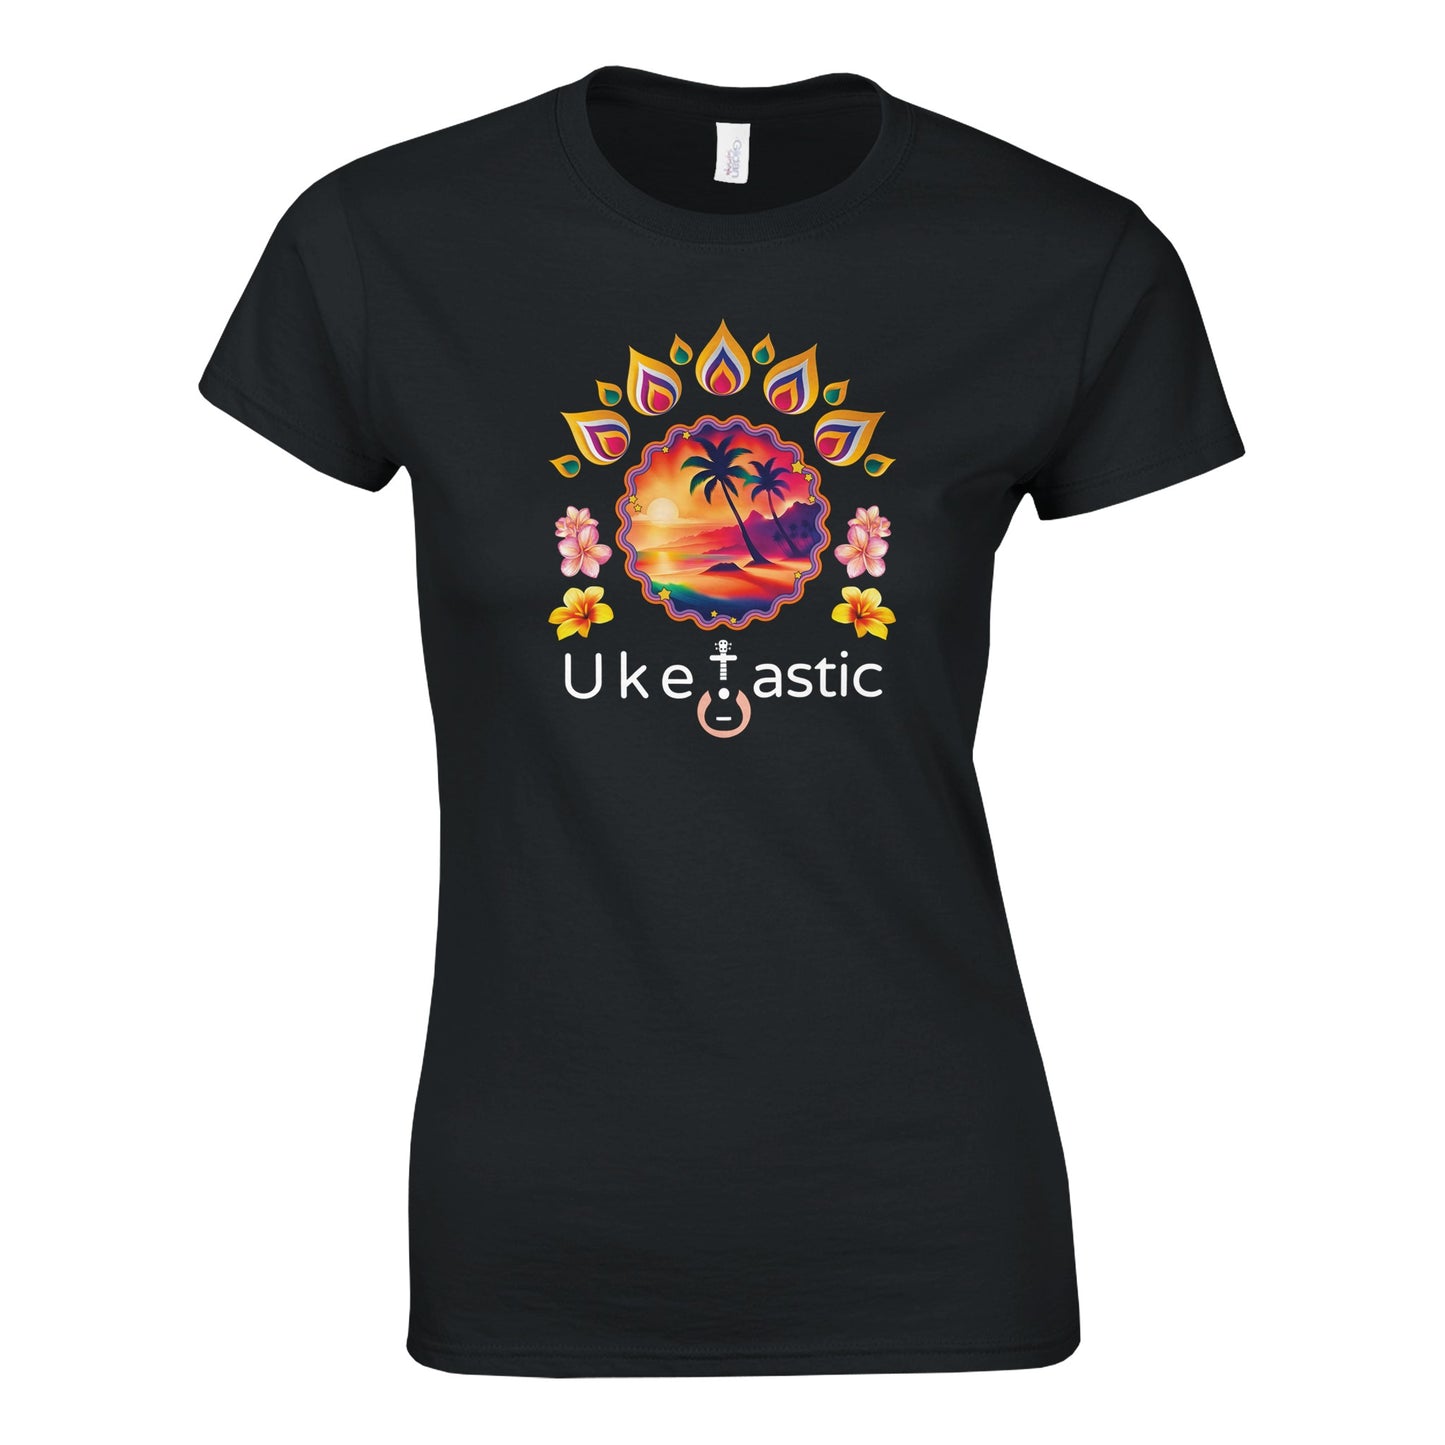 Women’s-sunset-ukulele-tshirt-1-Black